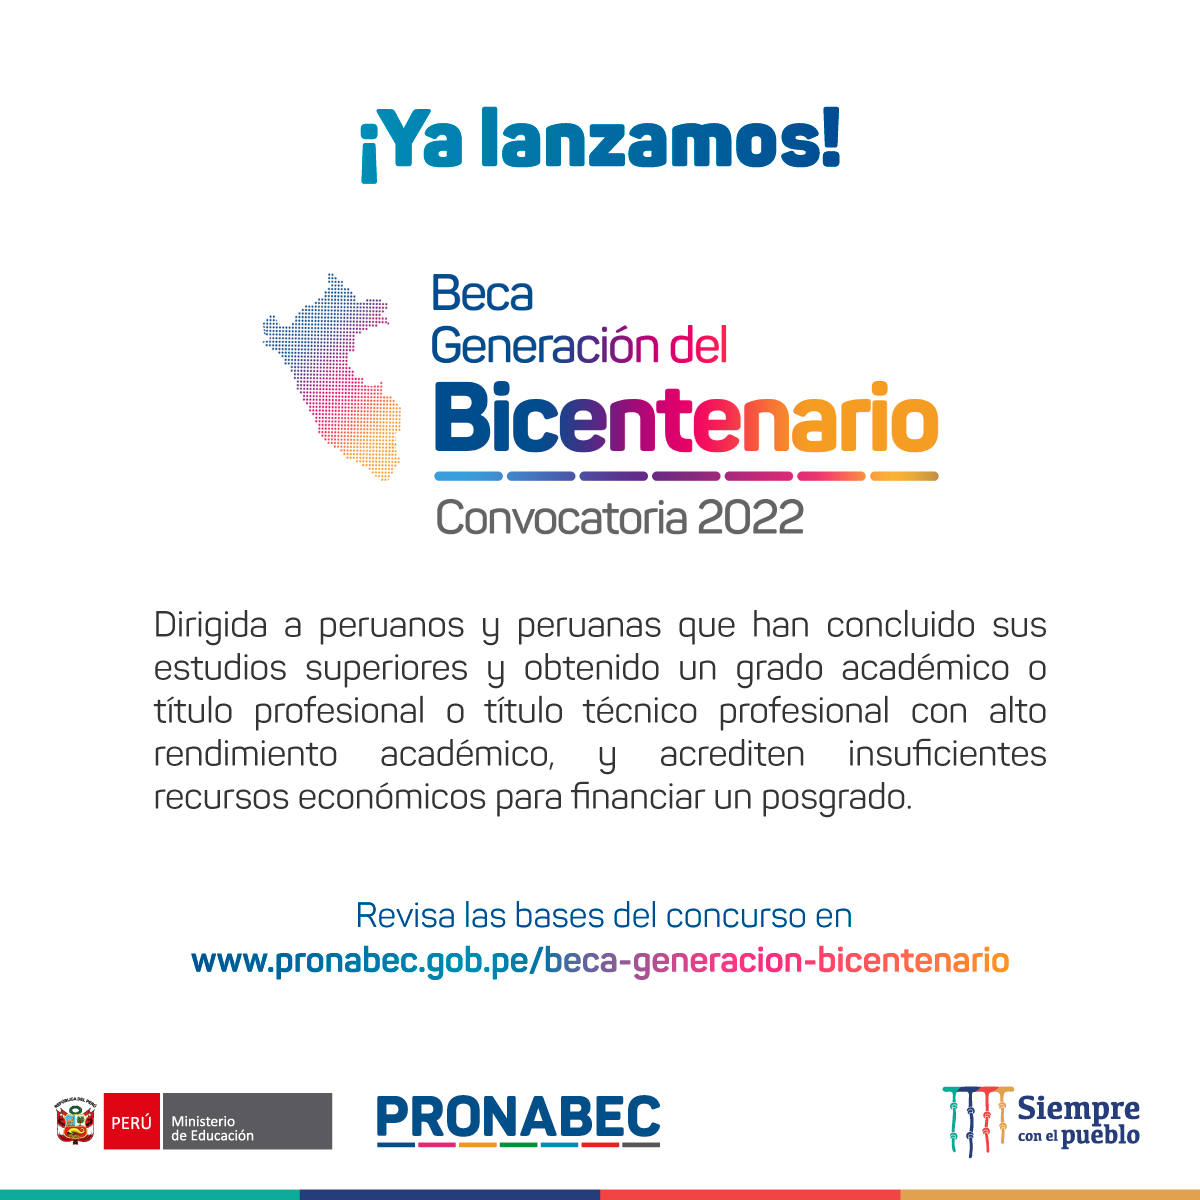 BECA Generación del Bicentenario 2022